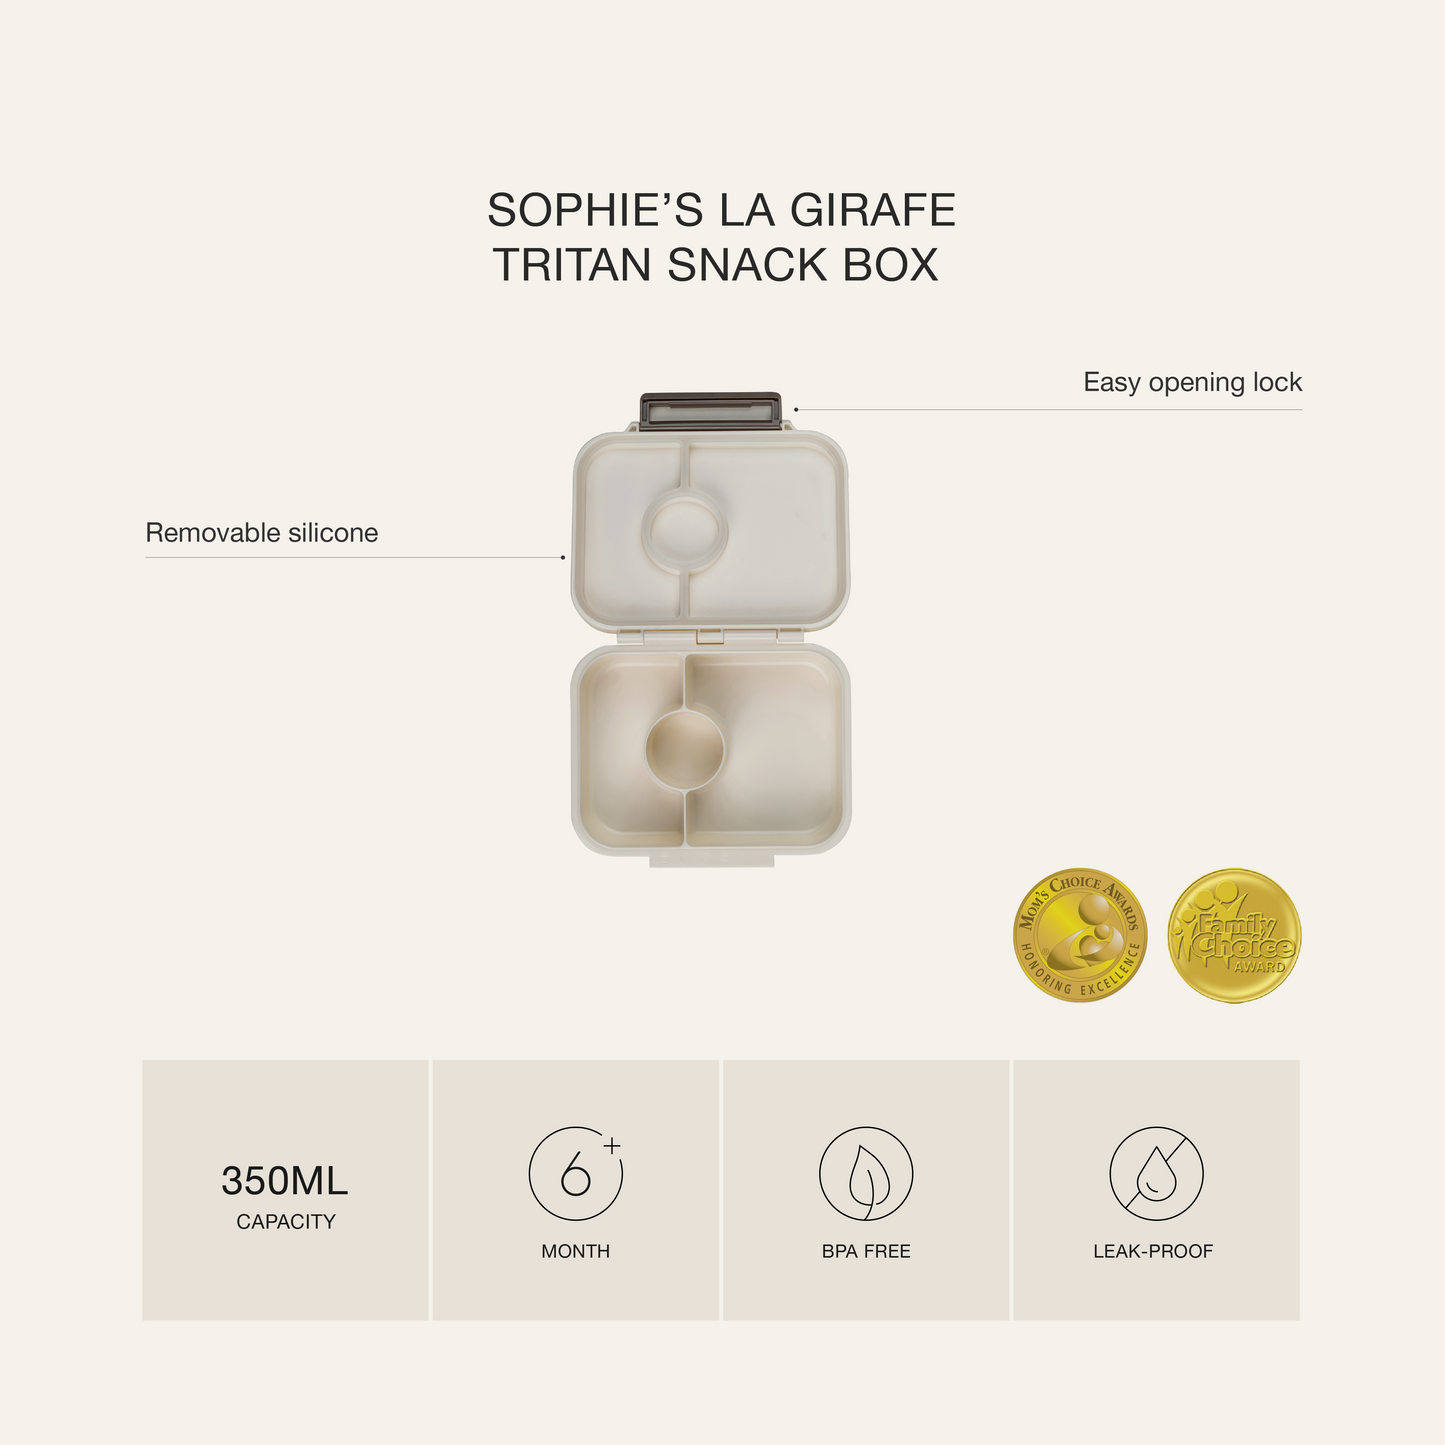 صندوق وجبات خفيفة تريتان - من صوفي لا جيراف